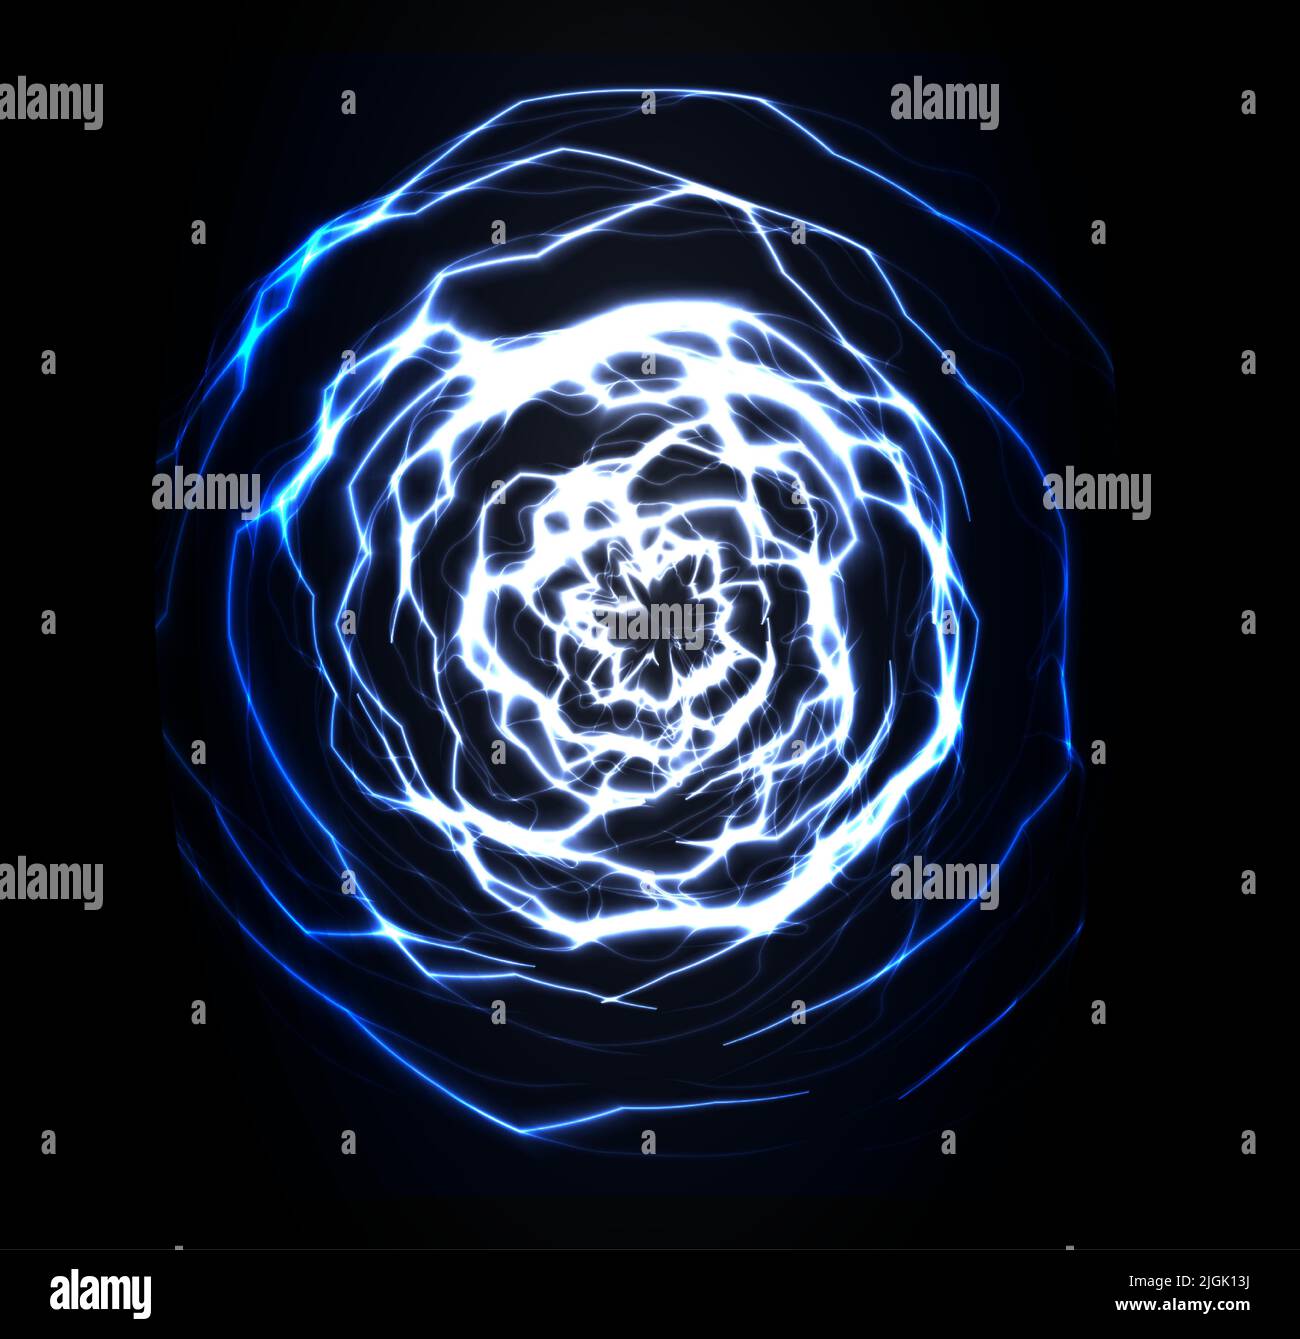 Spiral fractal background. Thunderbolt swirling lightning. Blue swirl sphere shape. Wormhole funnel. Portal explosion. Vector illustration. Stock Vector